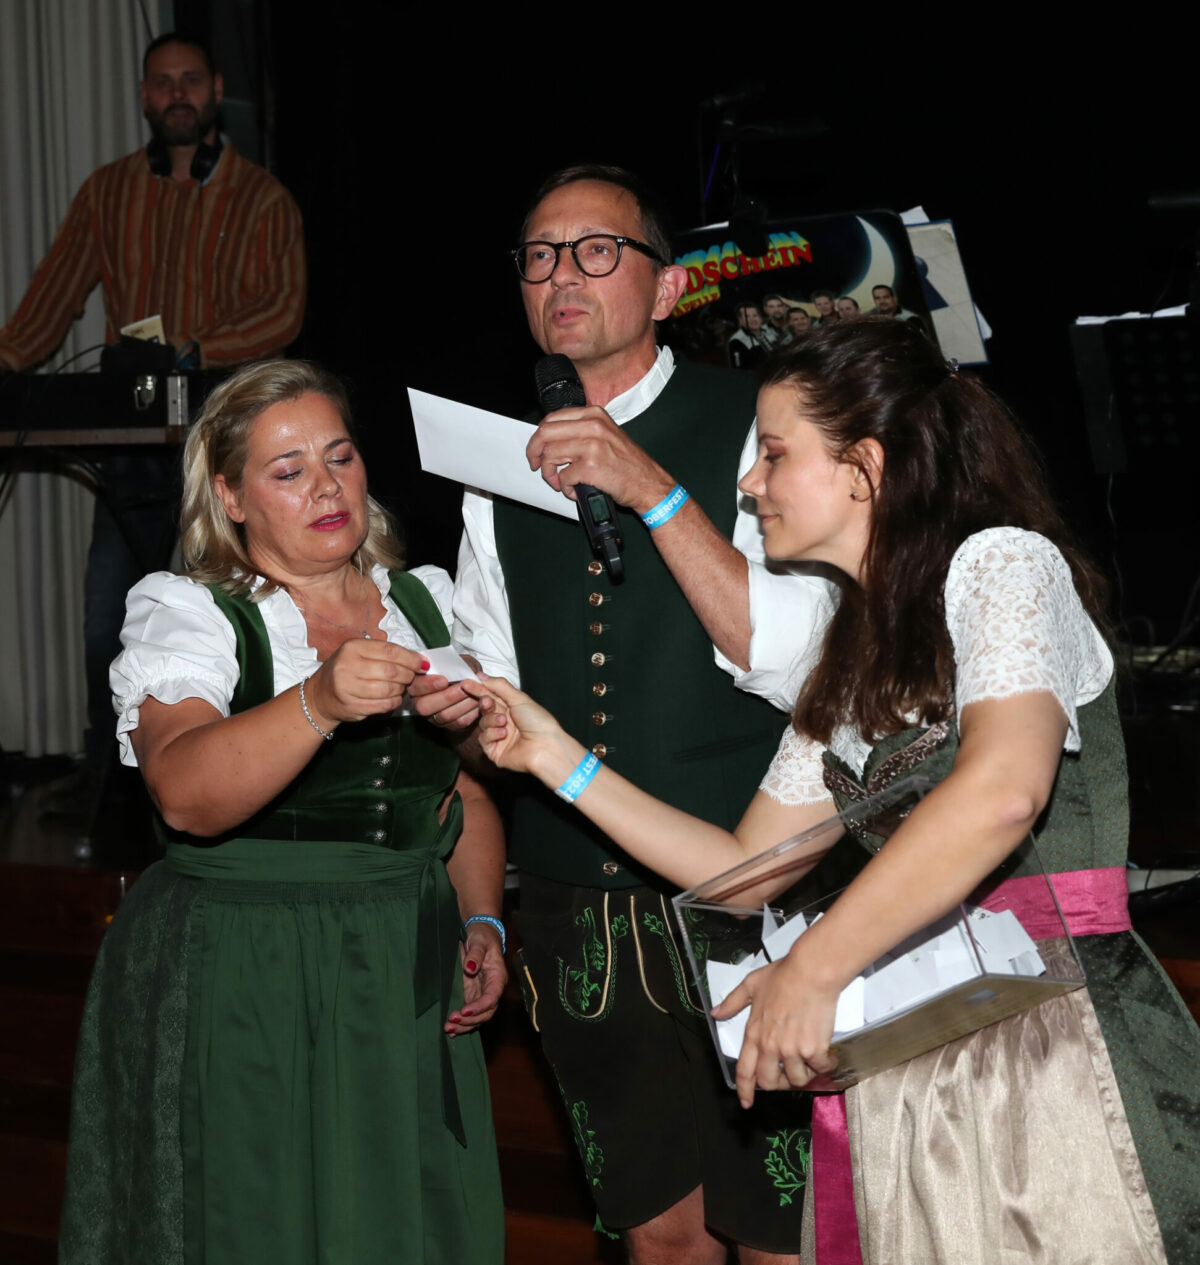 Oktoberfest in Kooperation mit der Deutsche Schule Budapest